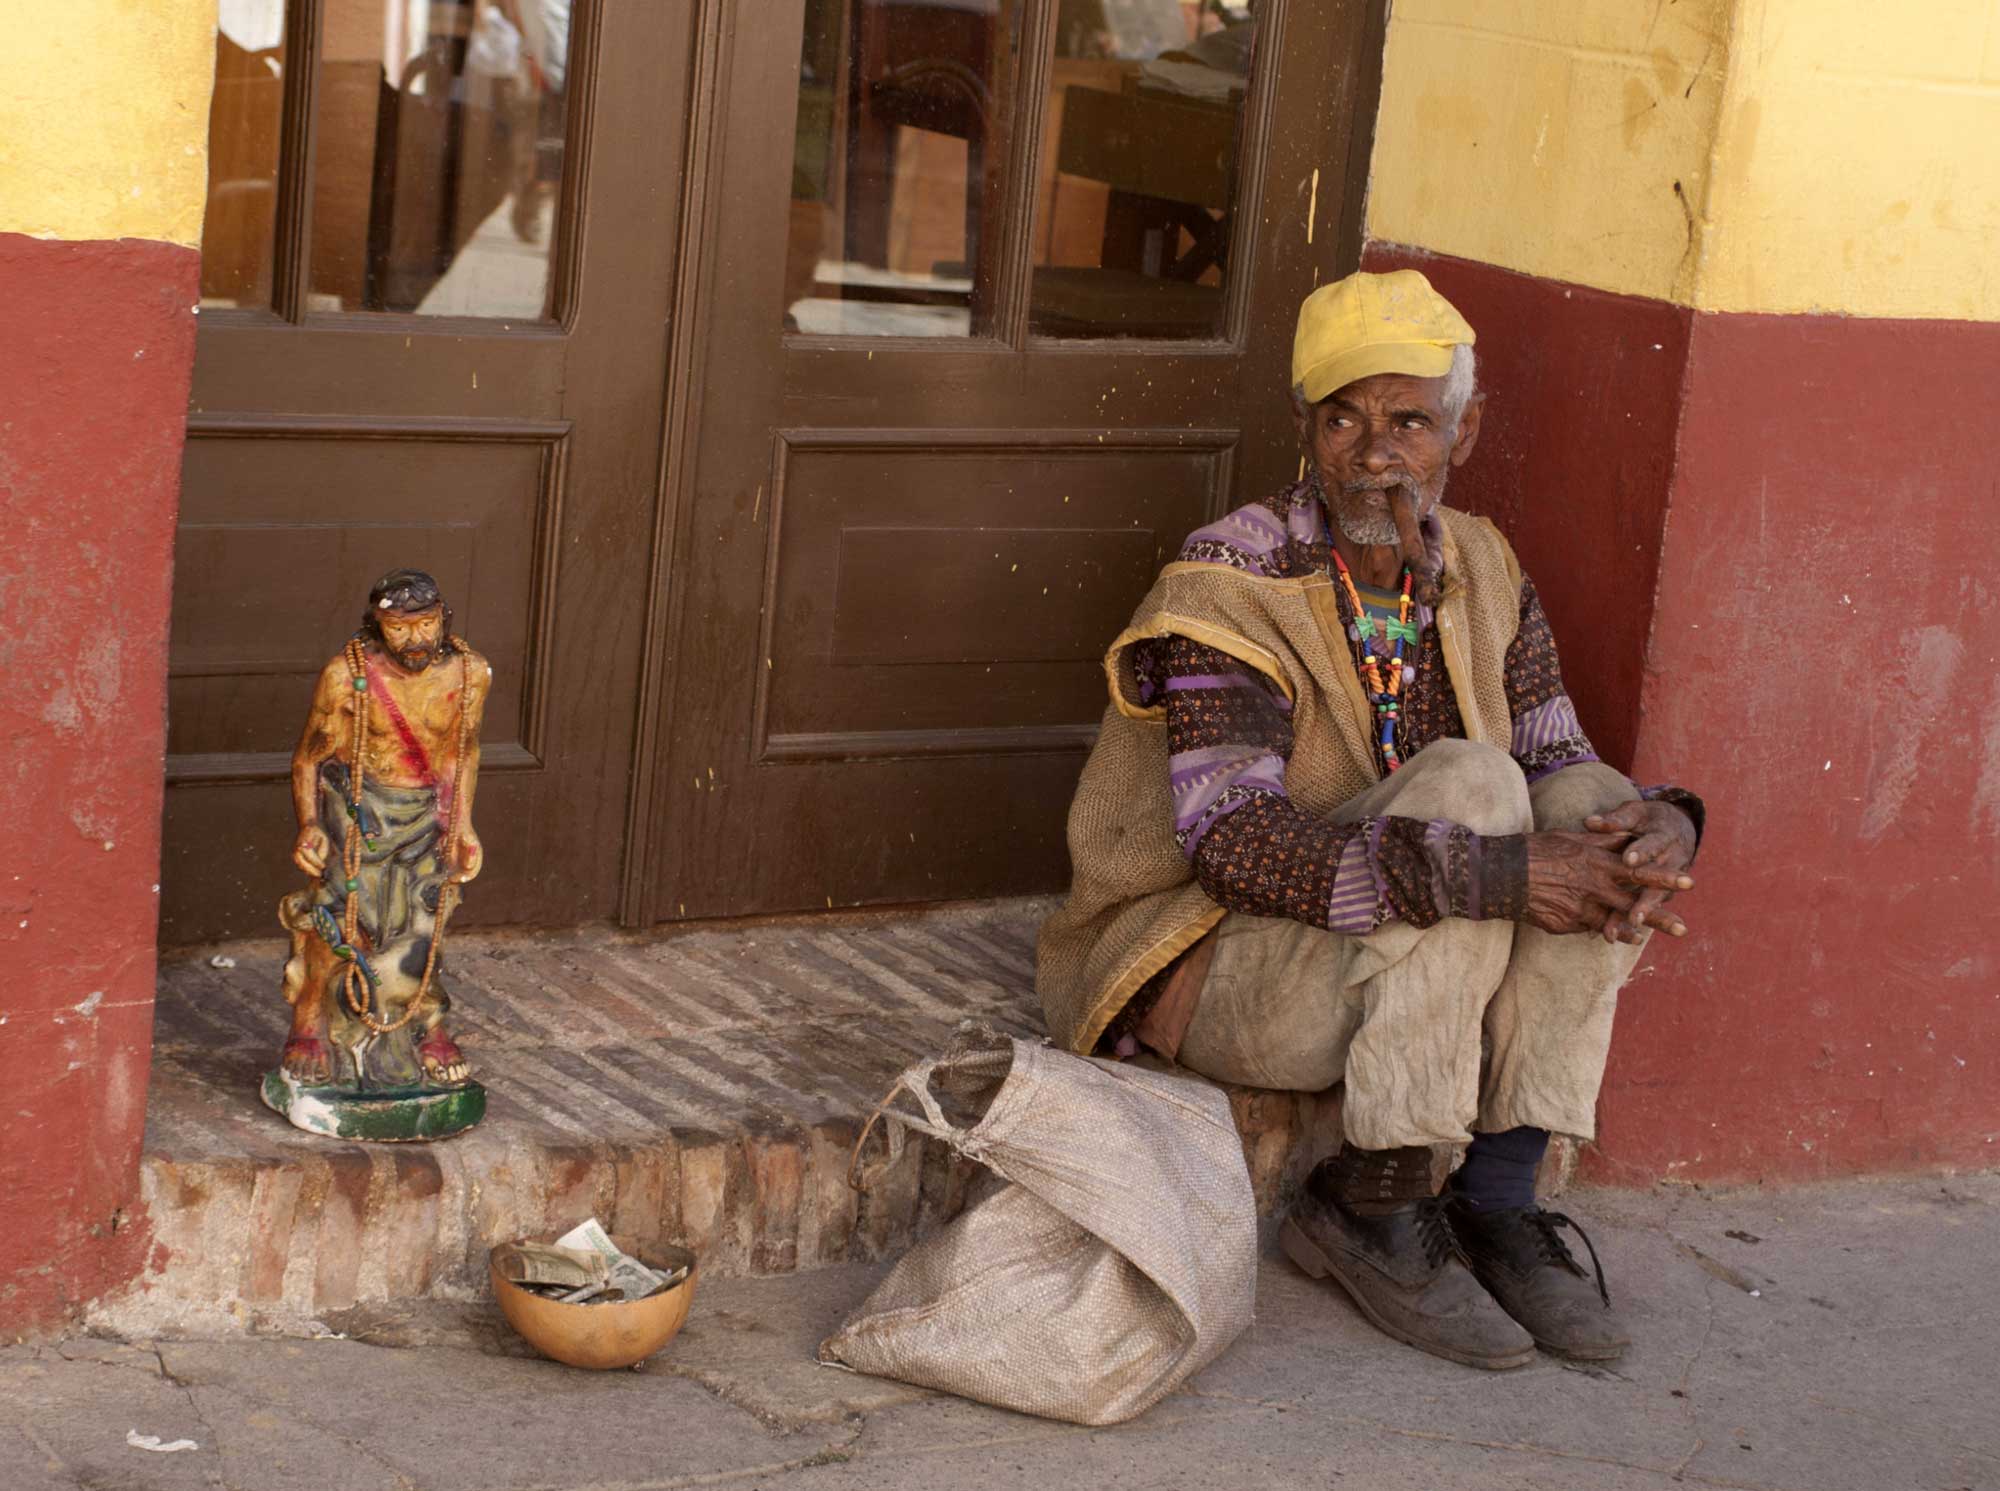 Street photogaphy in Trinidad de Cuba. Photos by Julio Munoz